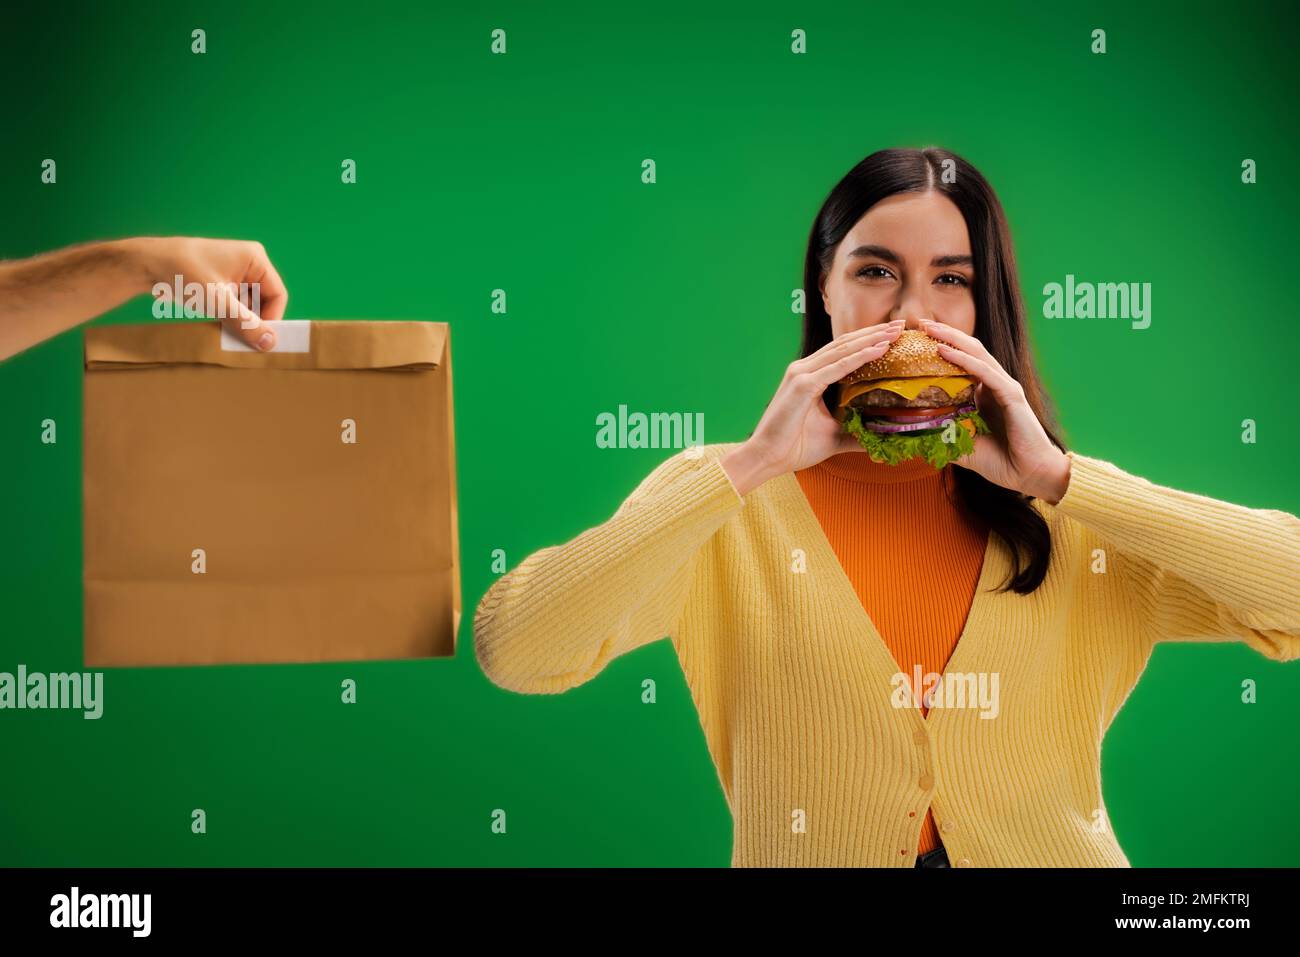 donna affamata mangiare delizioso hamburger vicino all'uomo con pacchetto di cibo isolato sul verde, immagine stock Foto Stock